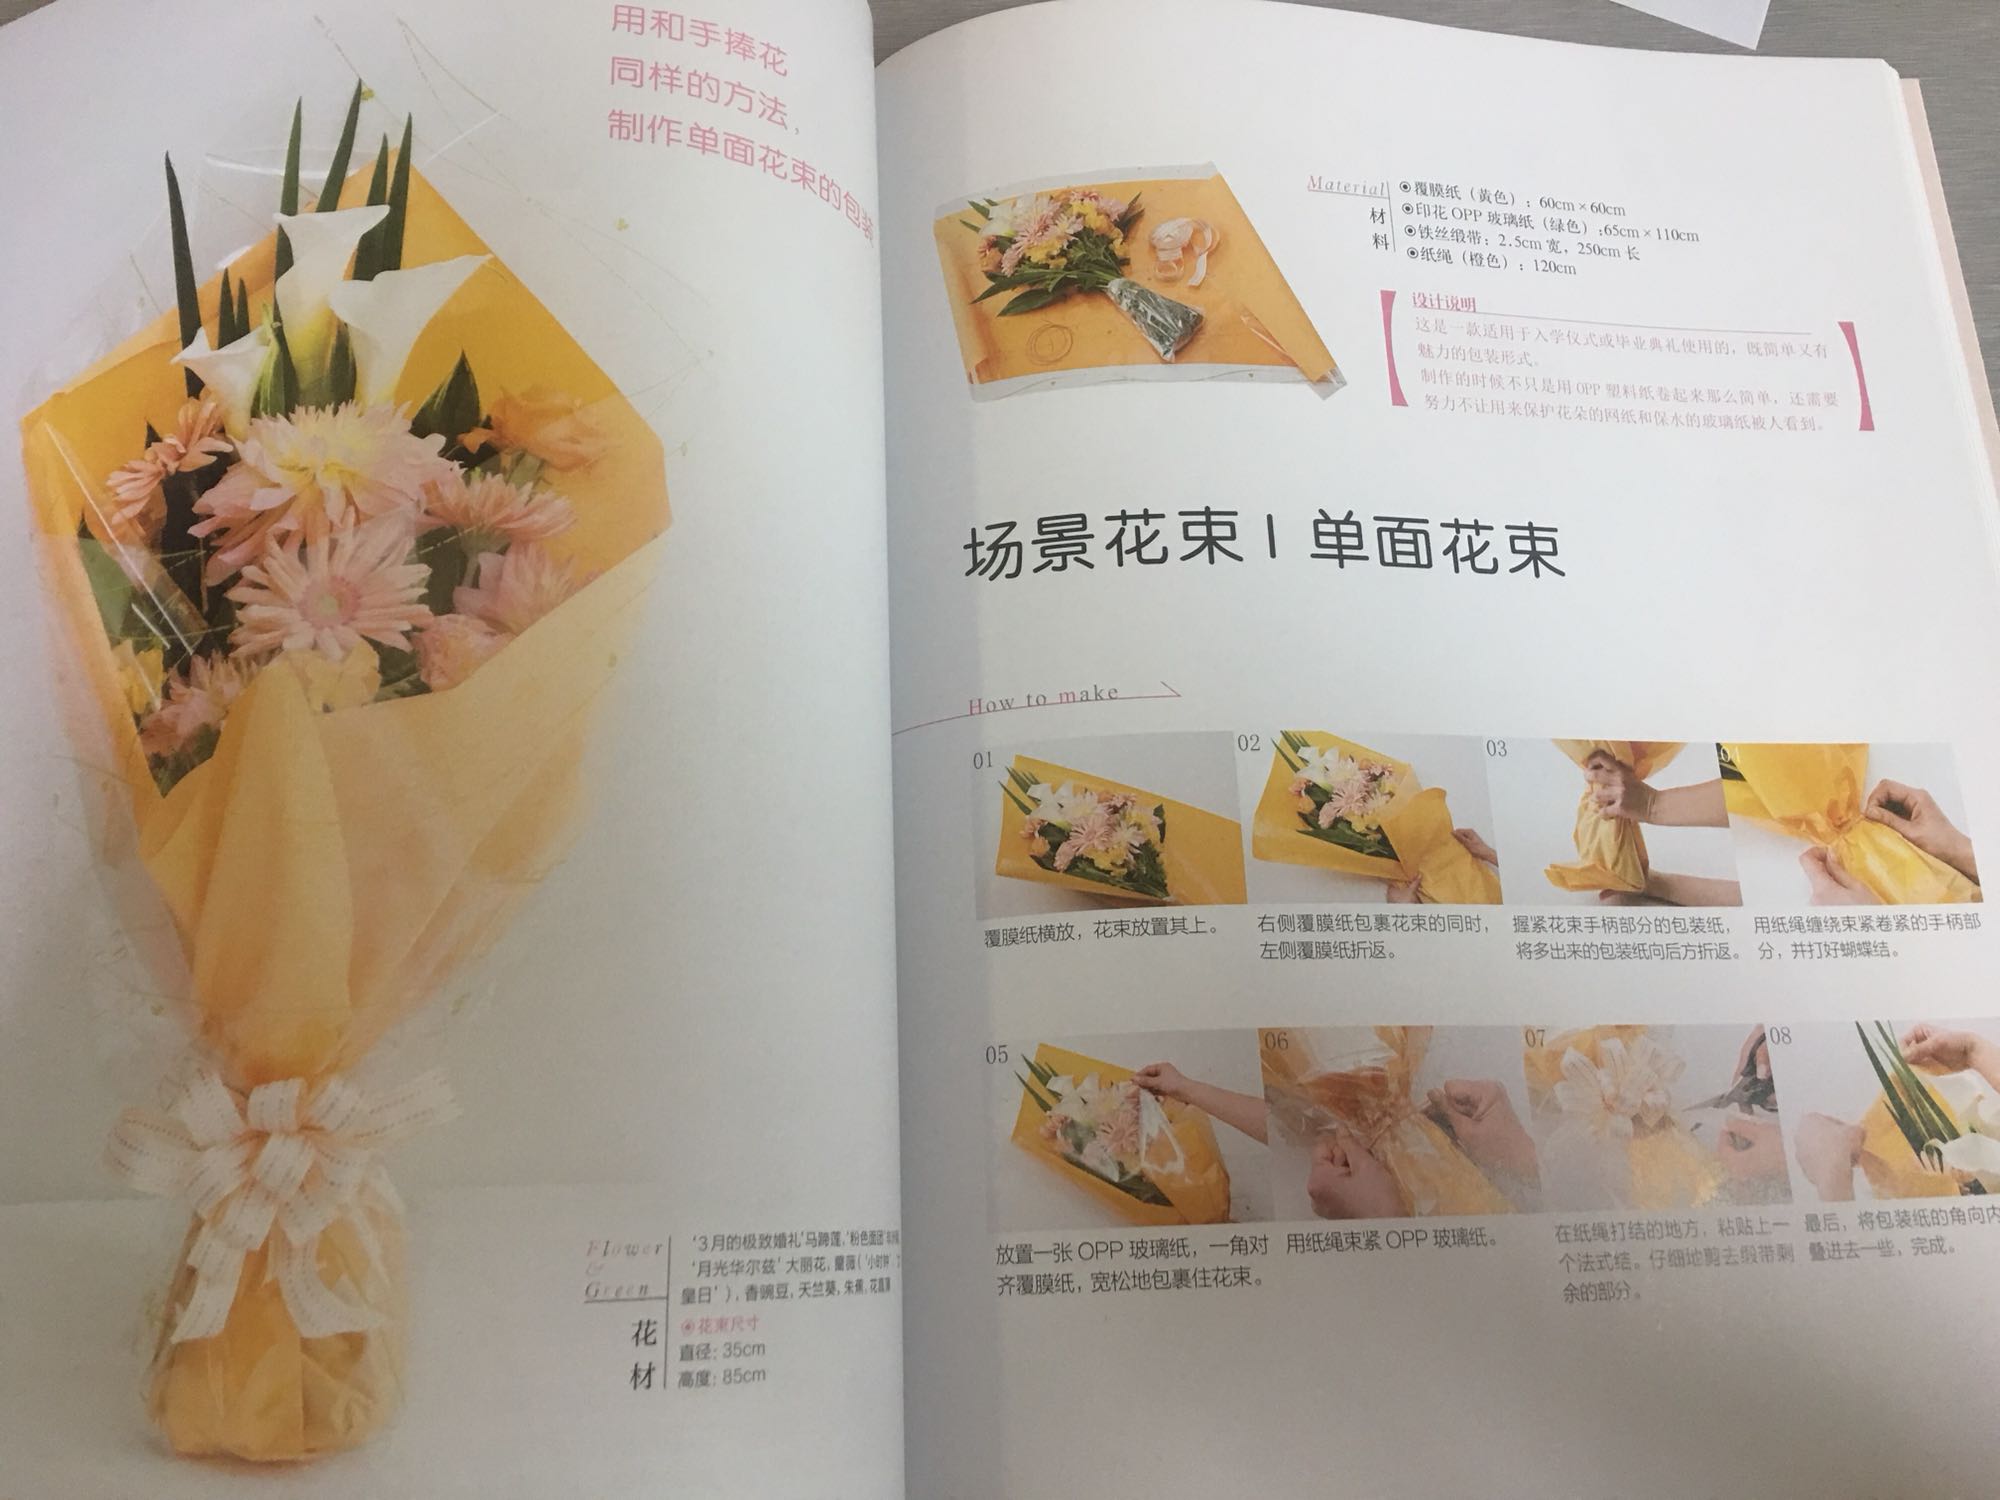 非常实用的手工书，美美的图片让人有开花店的冲动，这批书里面最喜欢这本啦。